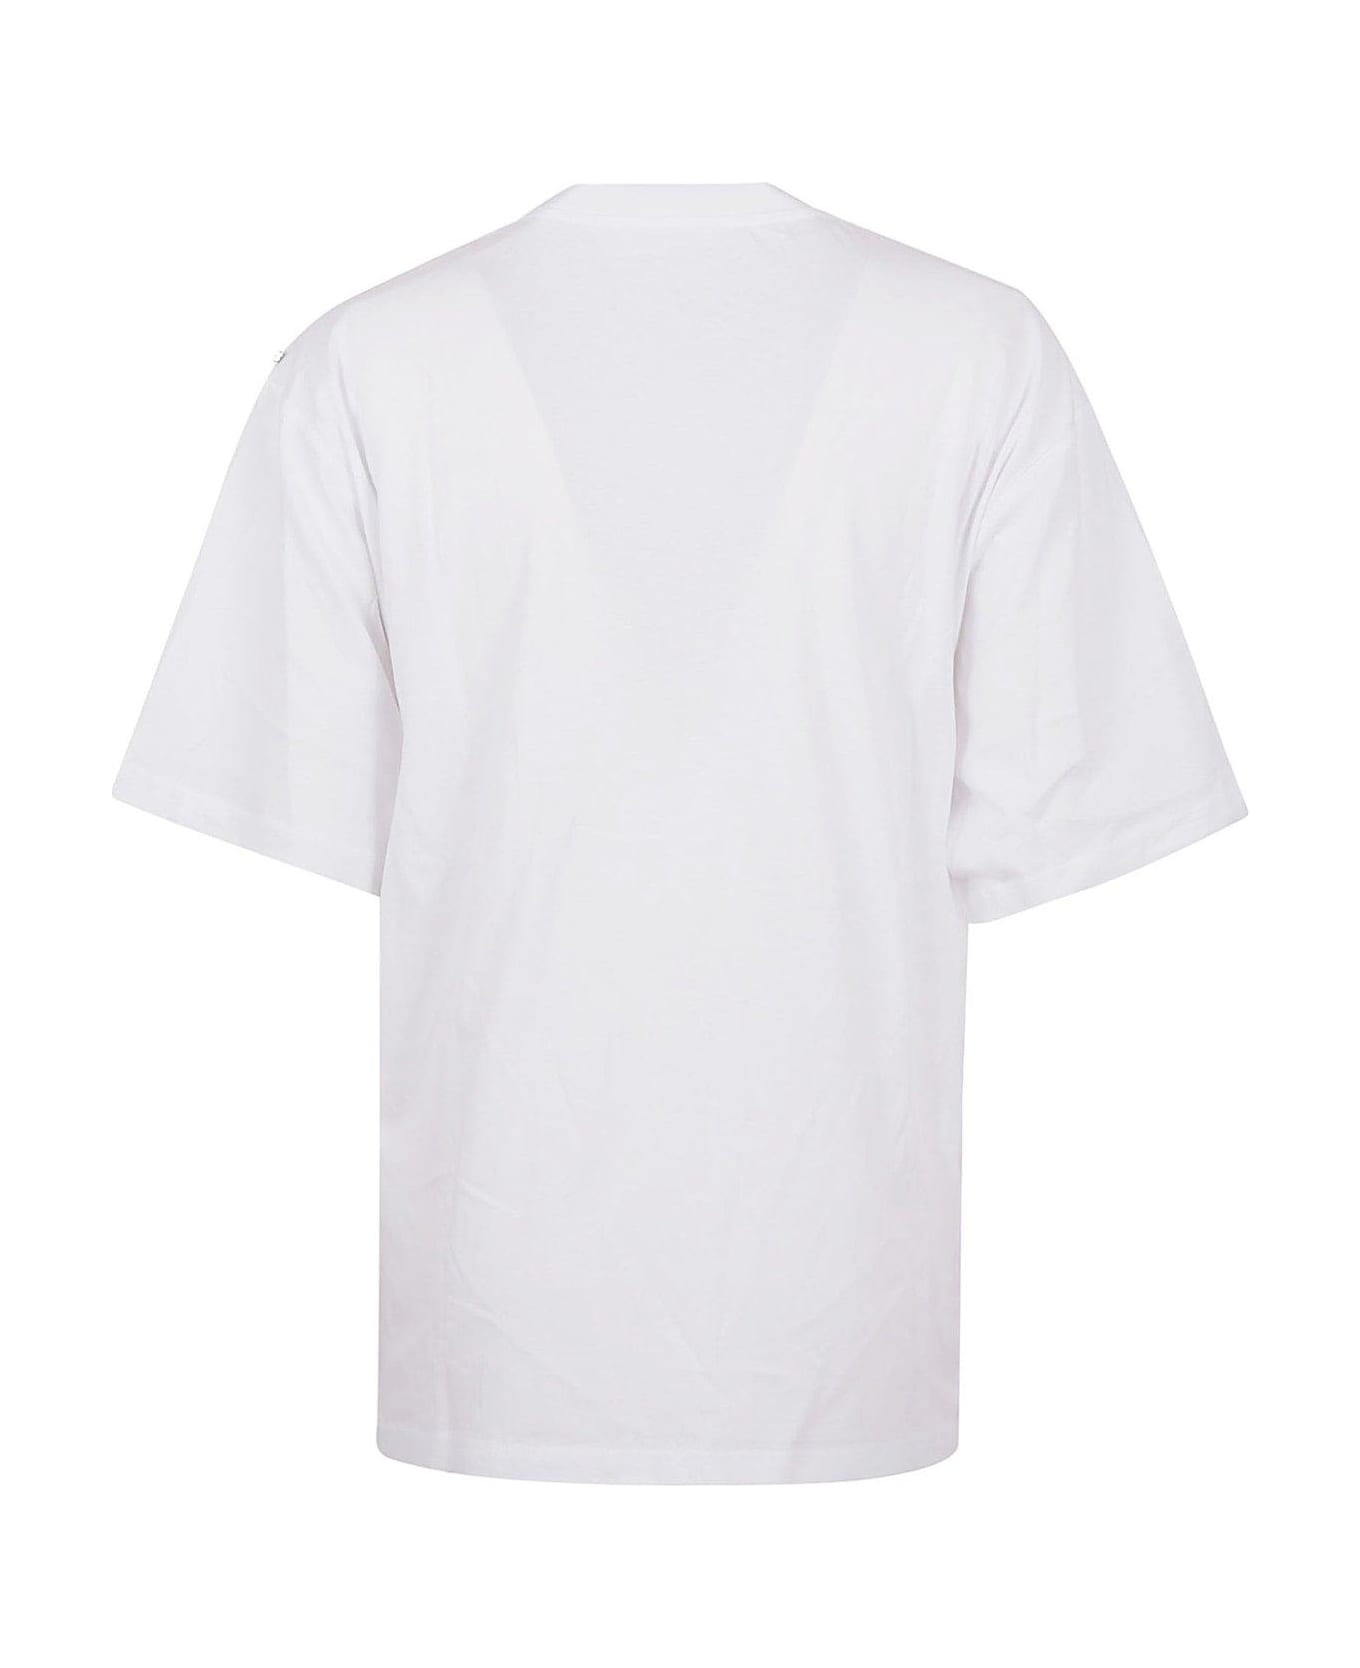 SportMax Cerwneck Short-sleeved T-shirt - POPTICAL WHITE